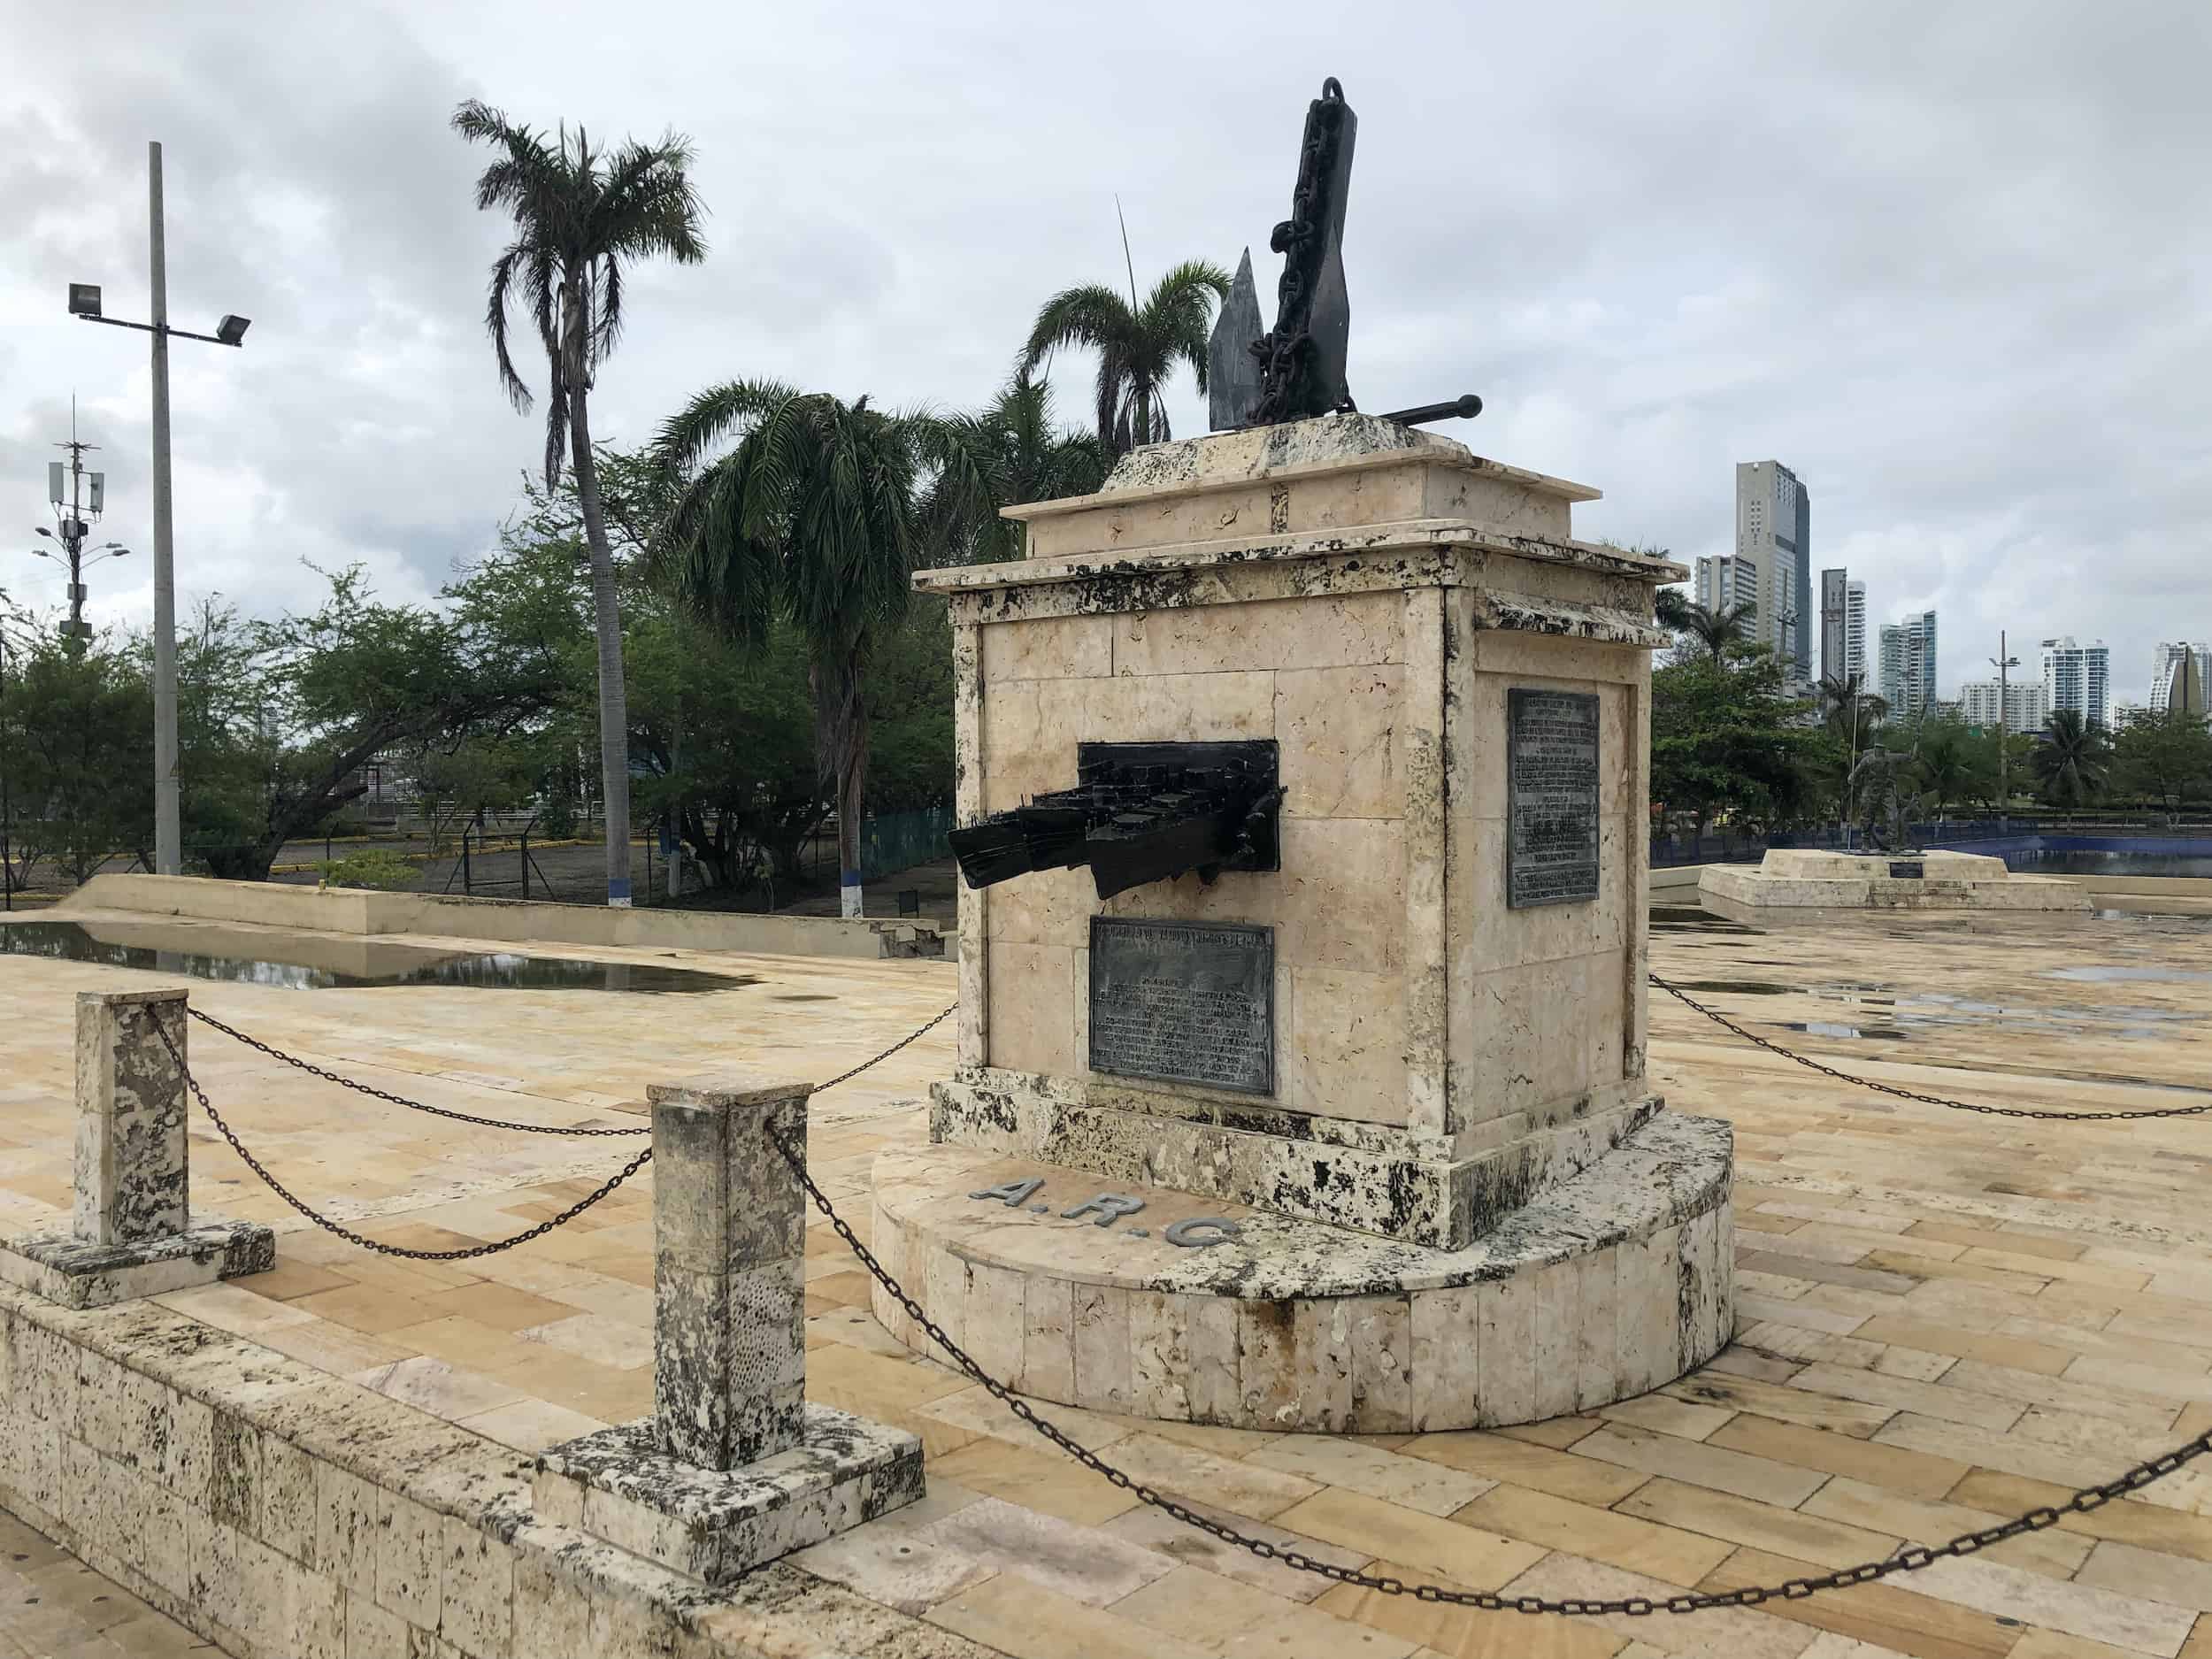 Monument at Parque de la Marina